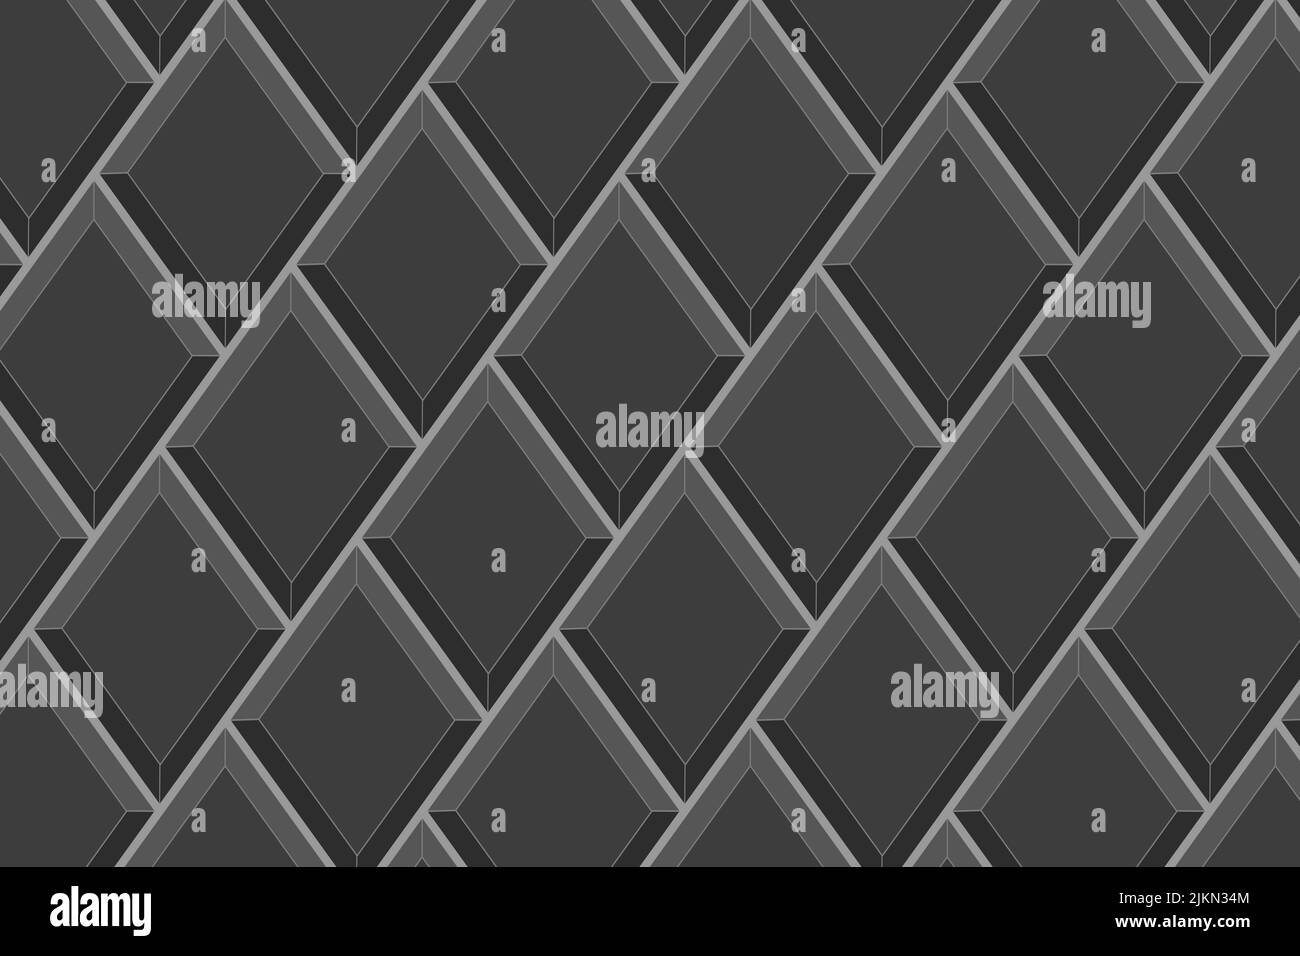 Schwarze Rhombus-Kachel in diagonaler Anordnung. Nahtloses Muster aus Keramik oder Ziegelwänden. Diamond Mosaik Hintergrund. Struktur der Innen- oder Außendekoration. Vektorgrafik flach Stock Vektor